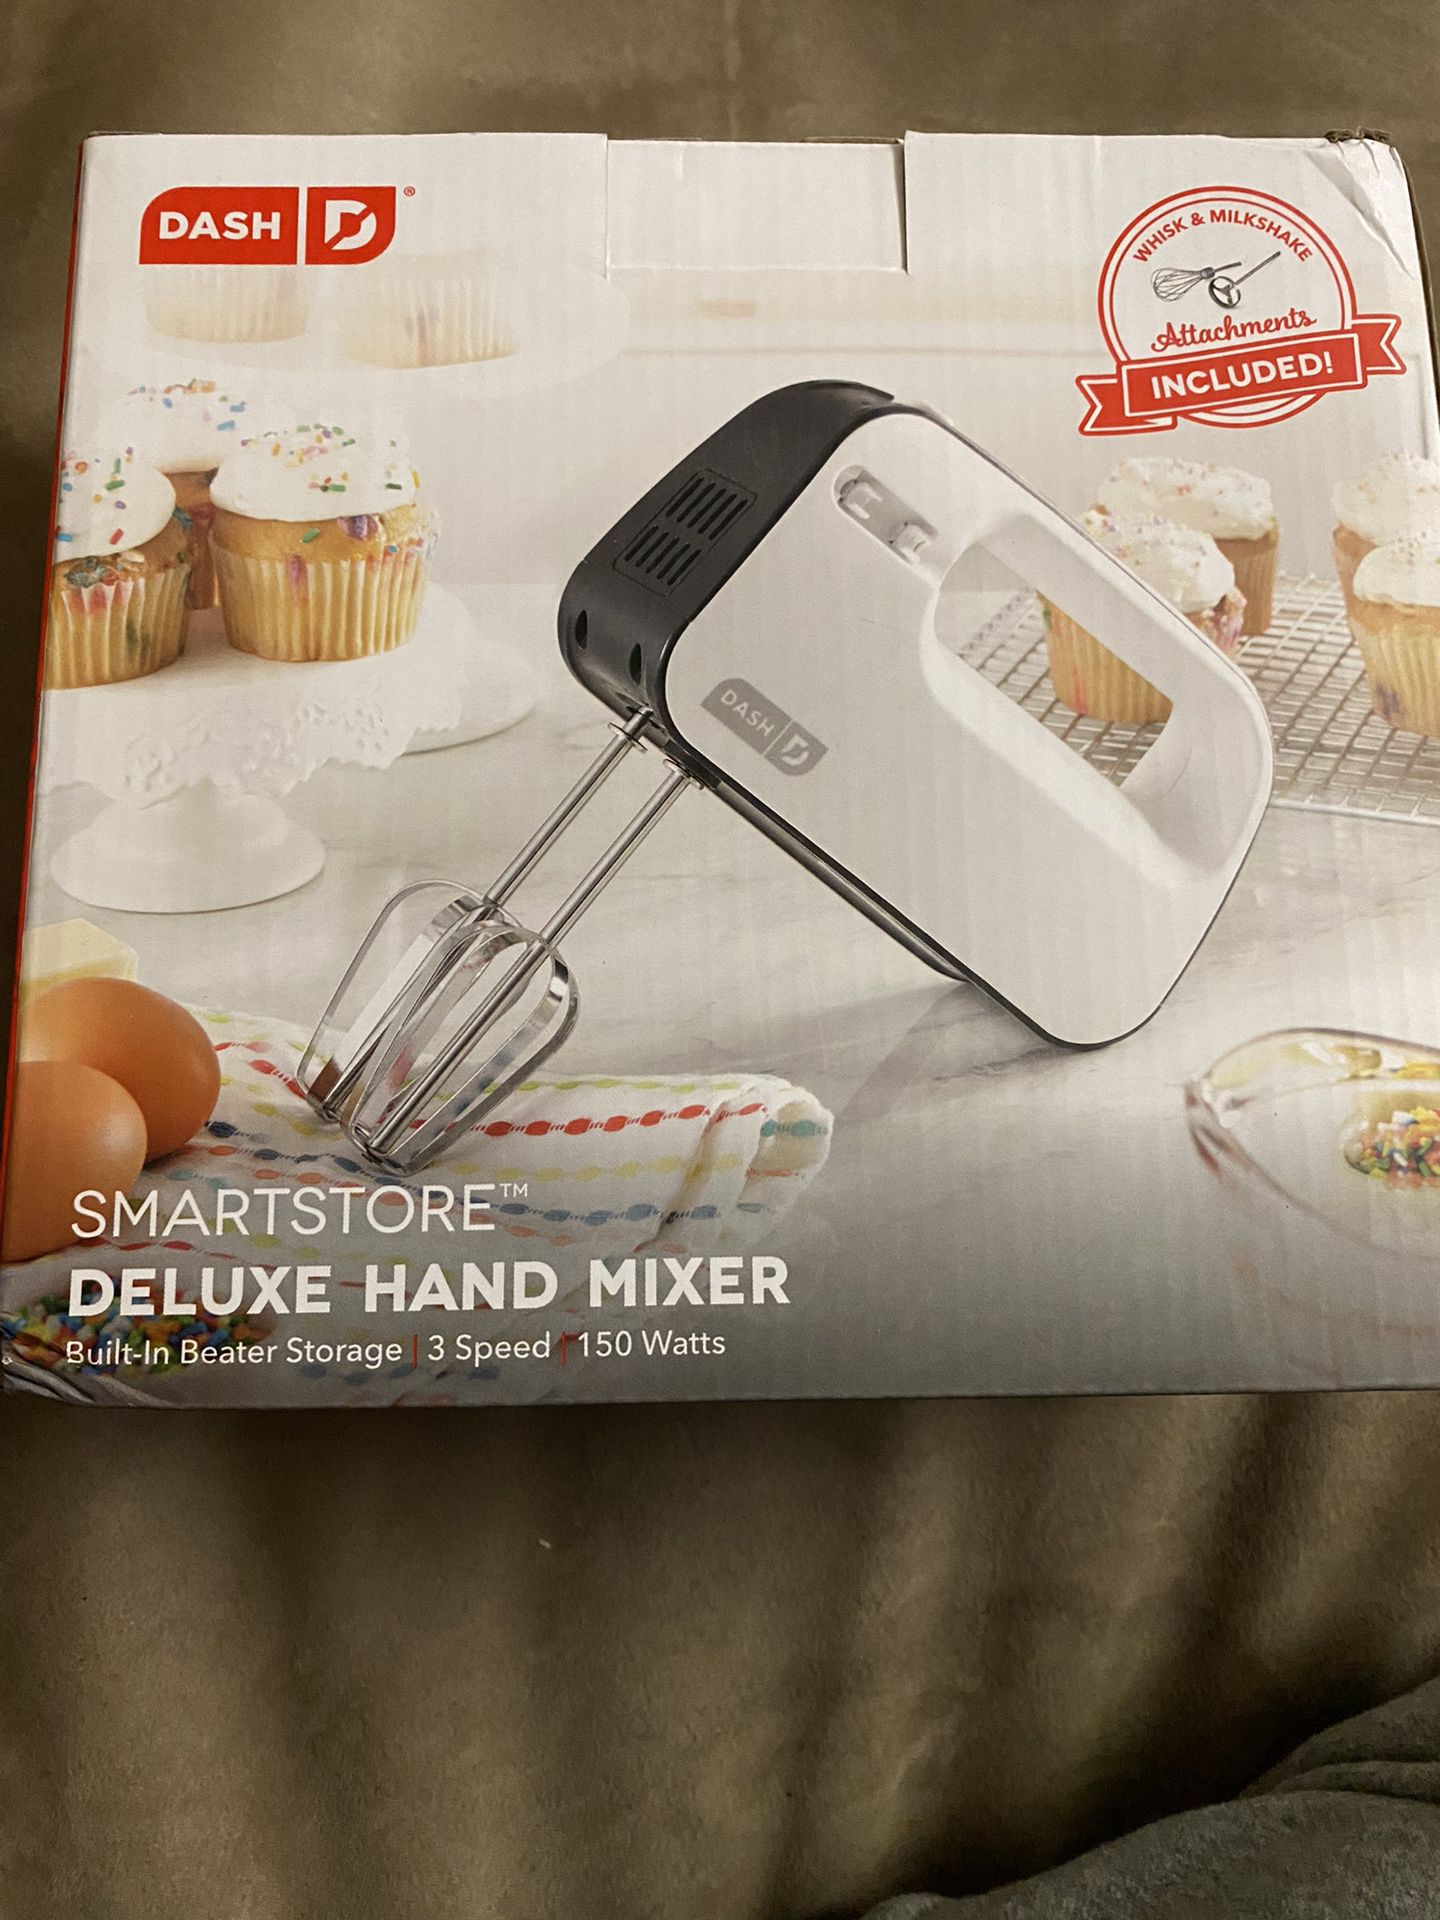 Dash Hand Mixer, Smartstore